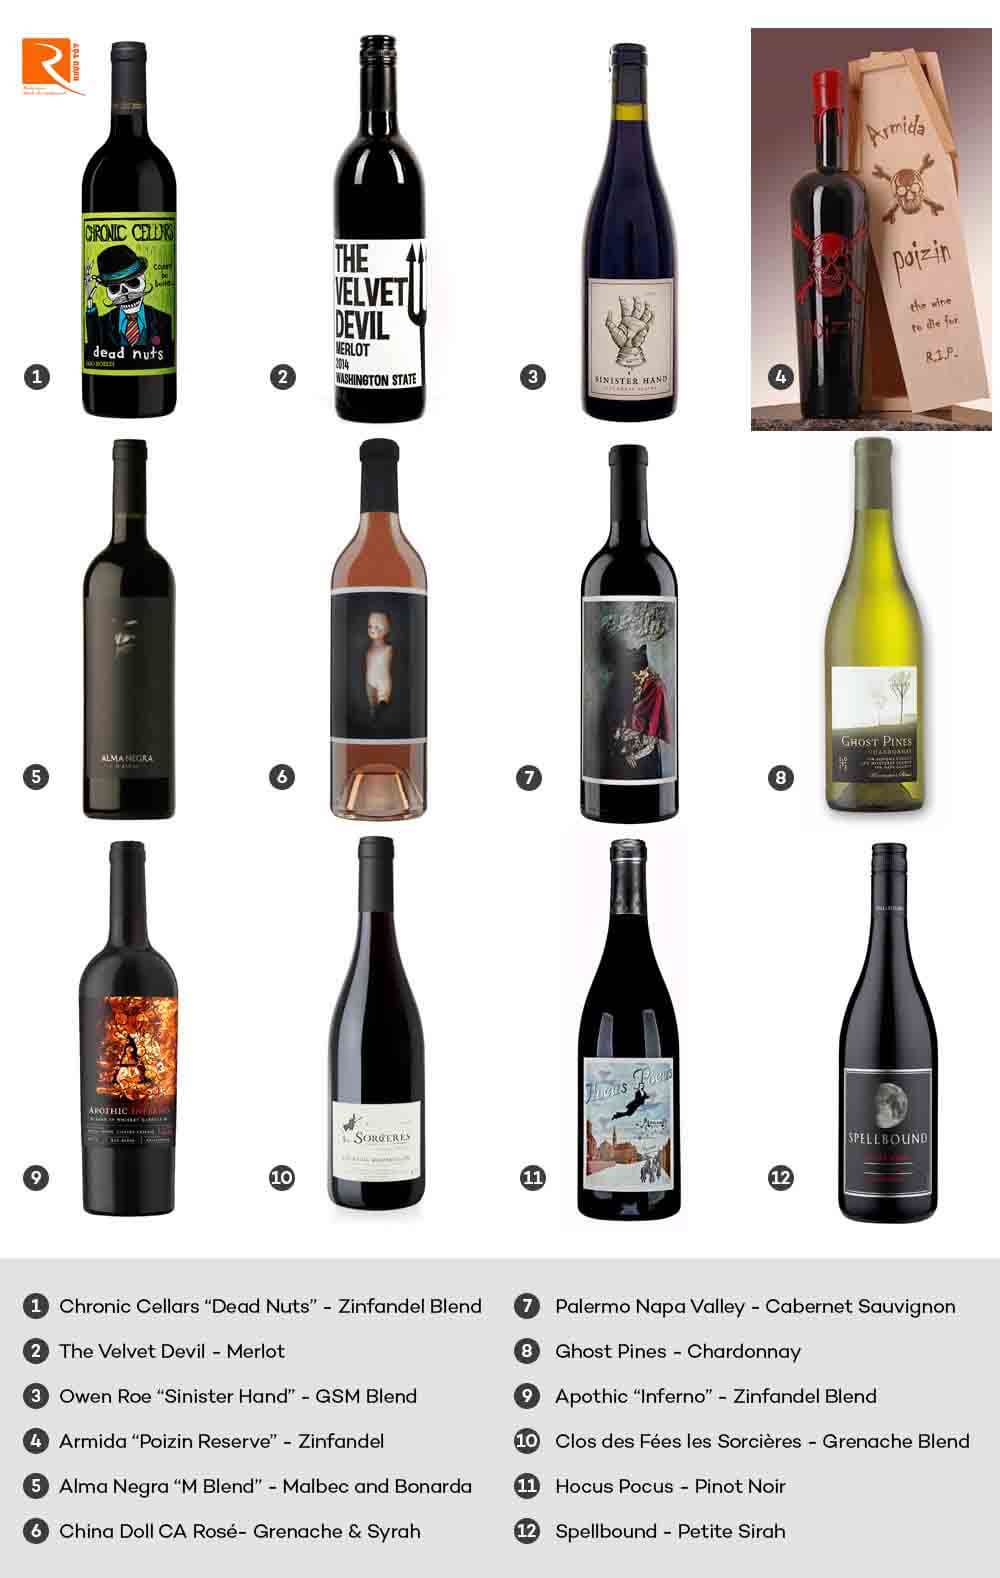 12 nhà sản xuất rượu vang nổi tiếng được biết đến với nhãn hình ma quái ở vỏ chai.